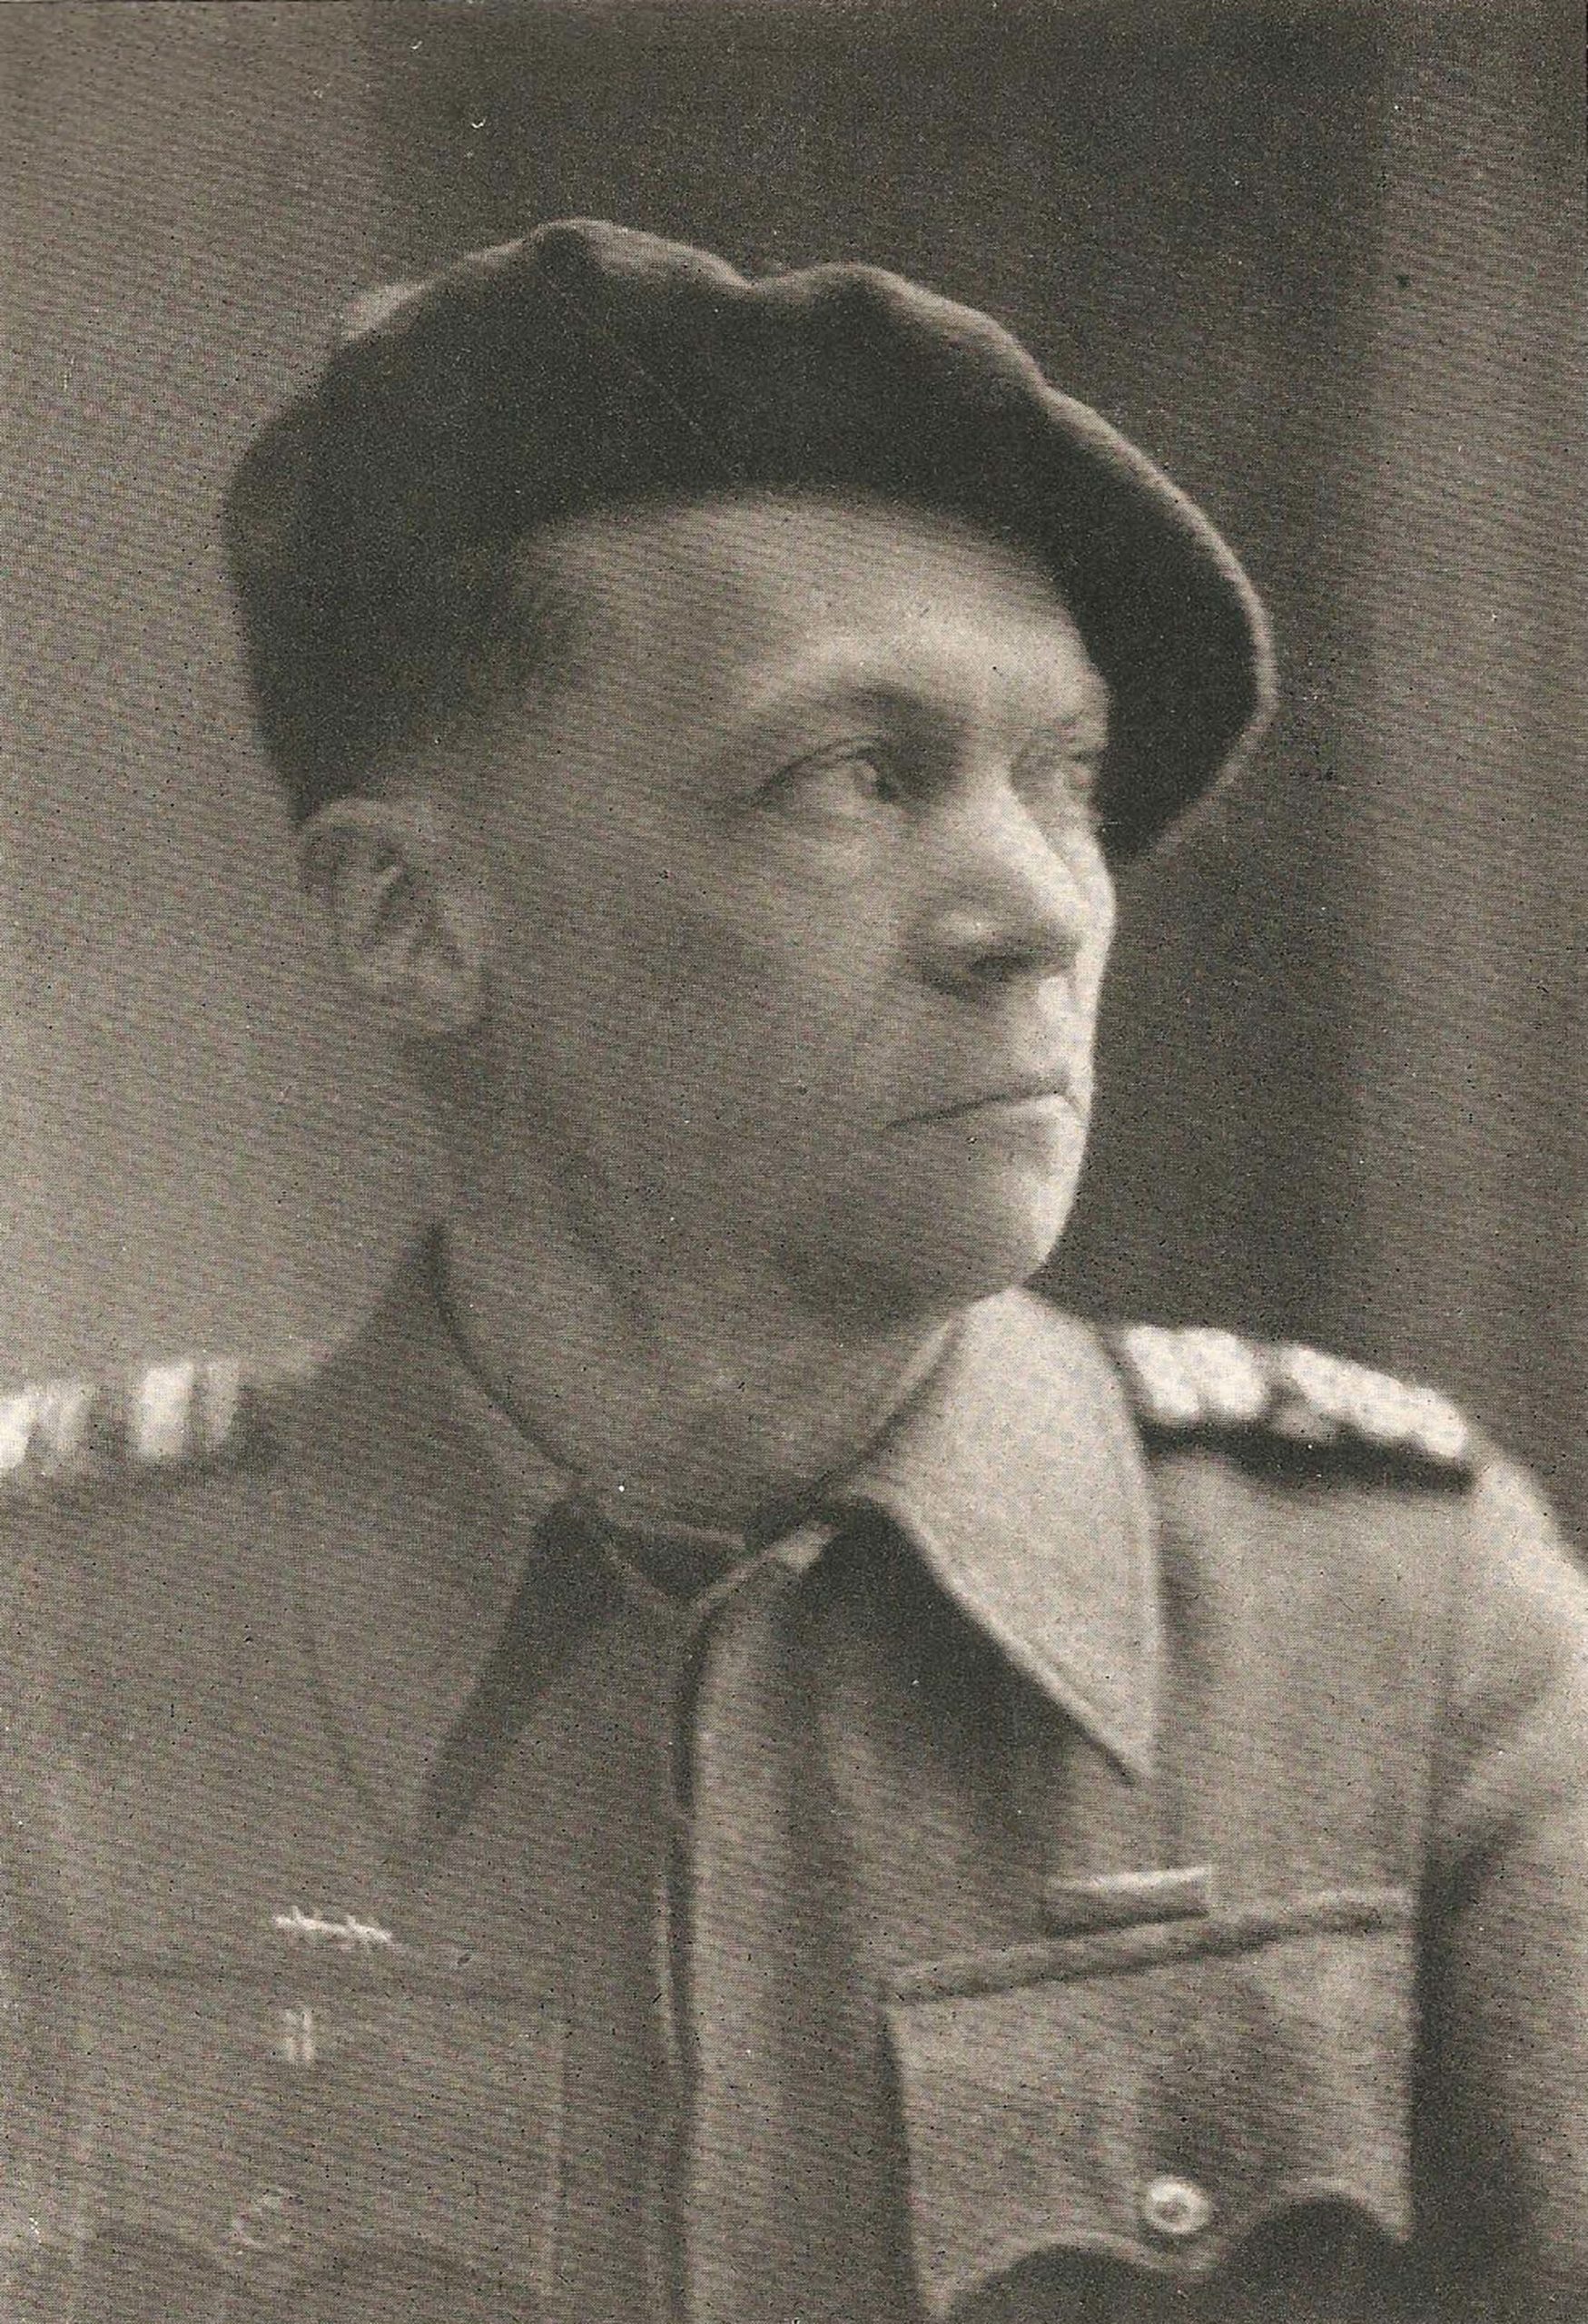 Lieutenant-colonel Baffert, chef militaire des Forces françaises de l’intérieur (FFI) de la Vendée